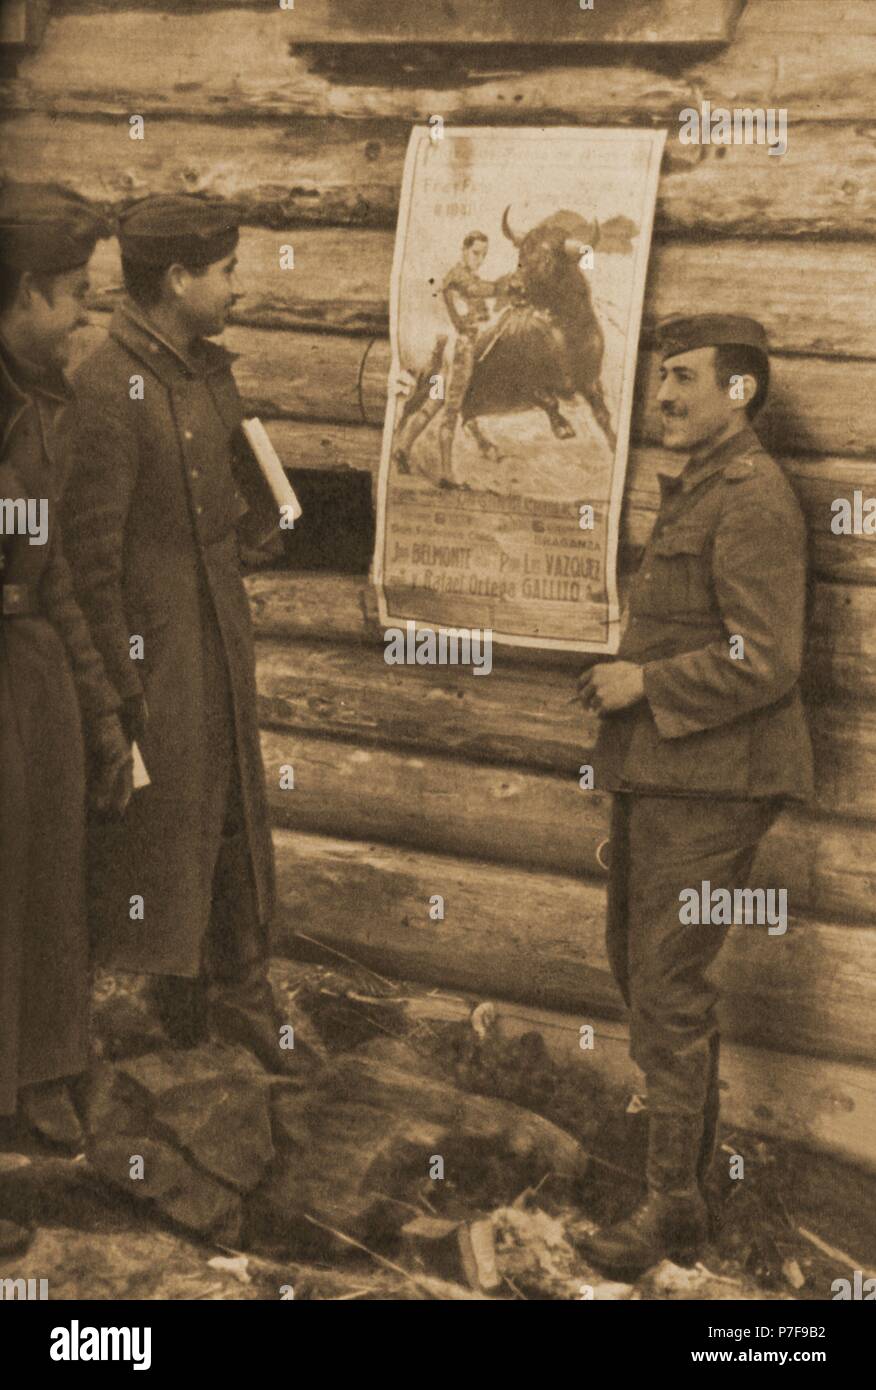 División Azul en Alemania en 1942 (Segunda Guerra Mundial). Cartel de una corrida de toros en un barracón de las tropas. Stock Photo